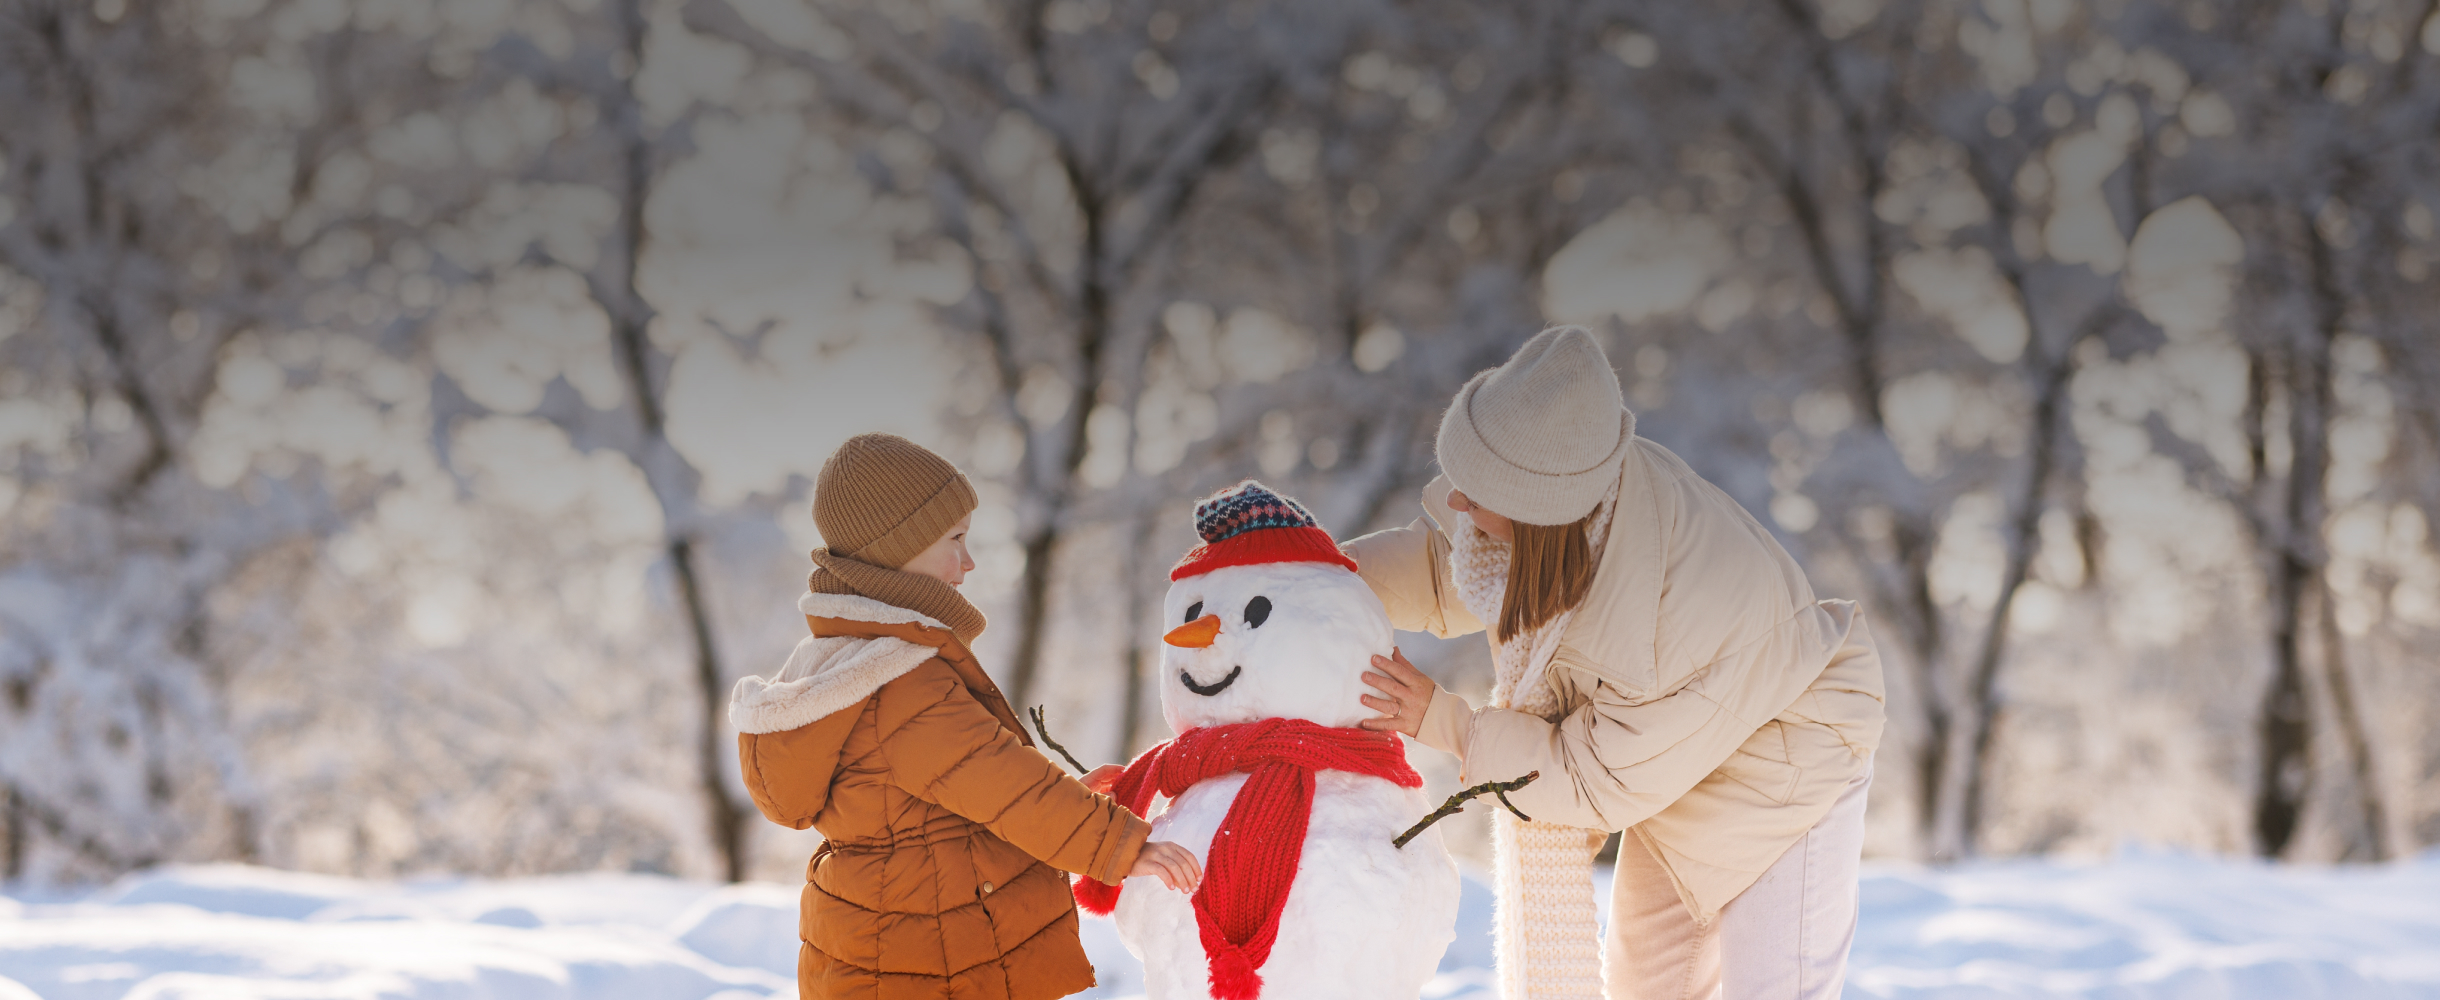 Снеговики, гадания и северное сияние: чем занять свободное время на новогодних праздниках